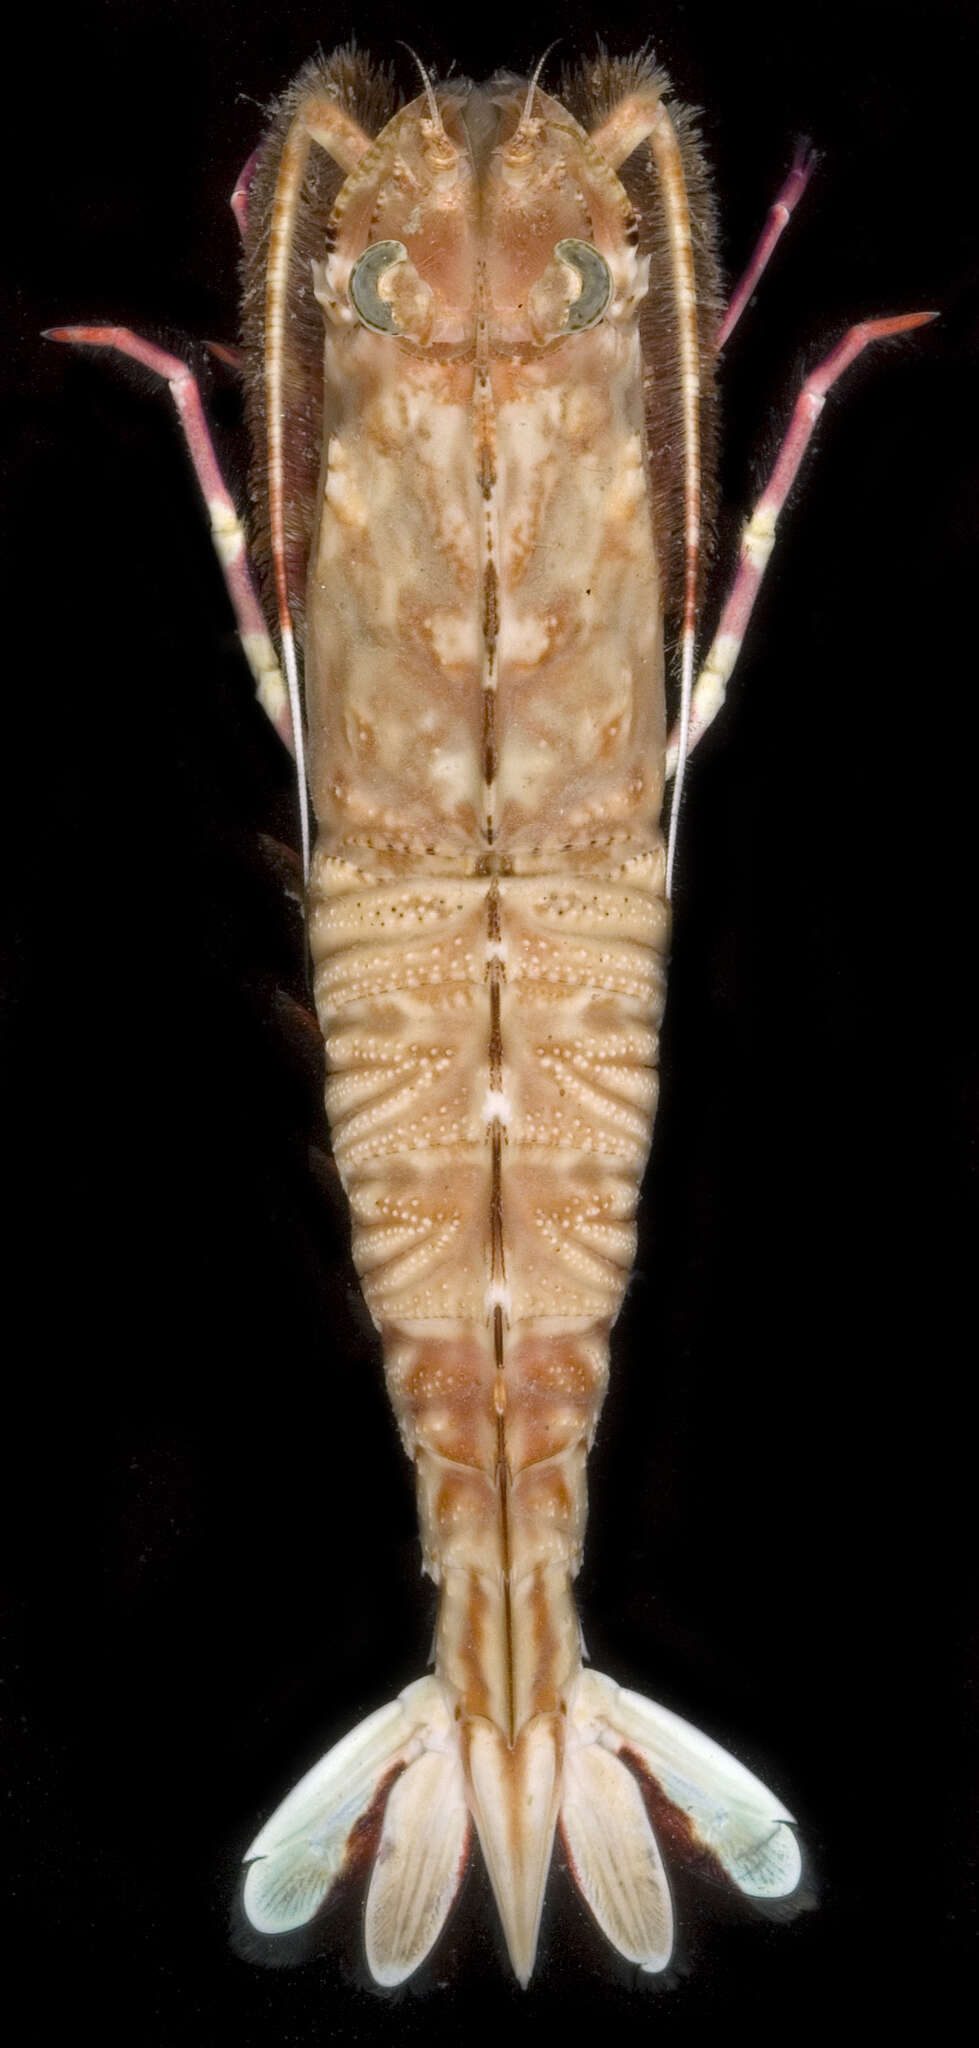 Image of Rock shrimp